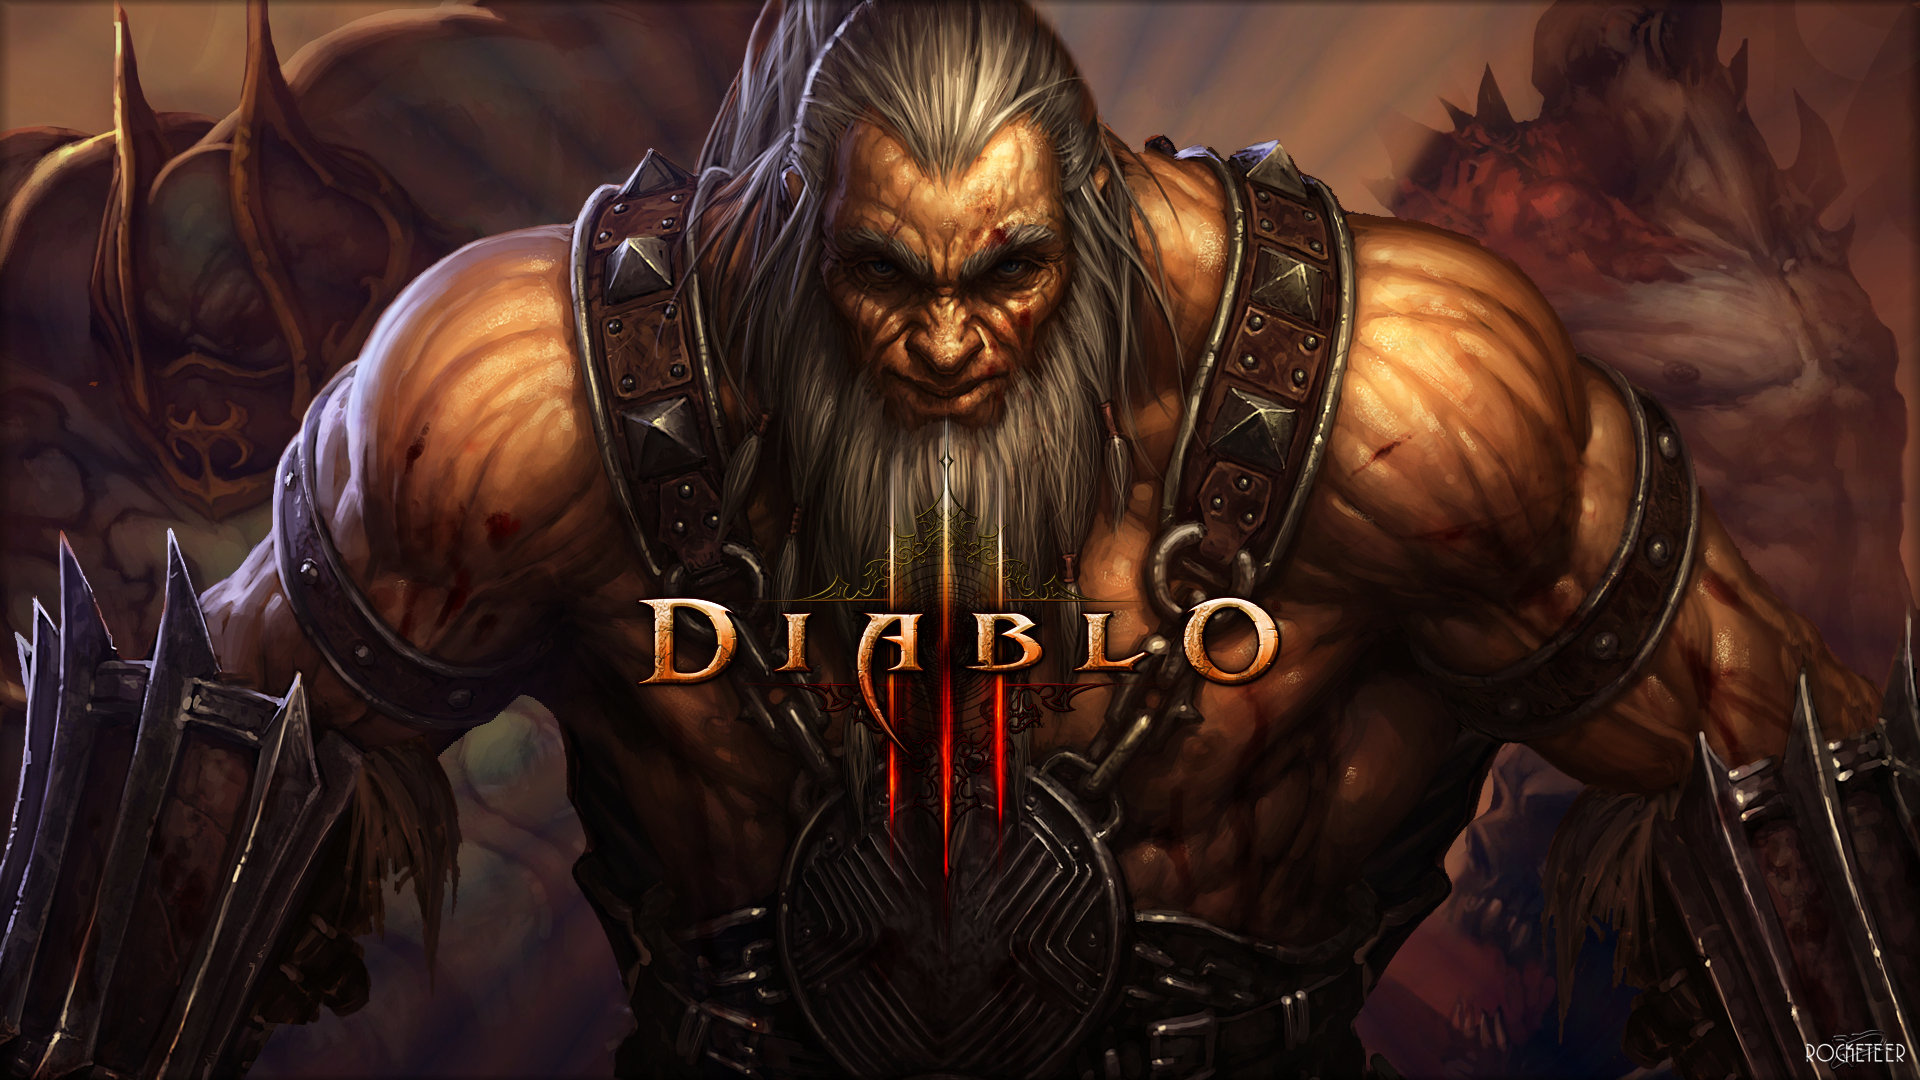 Awesome Diablo 3 free wallpaper ID:30869 for full hd 1920x1080 desktop